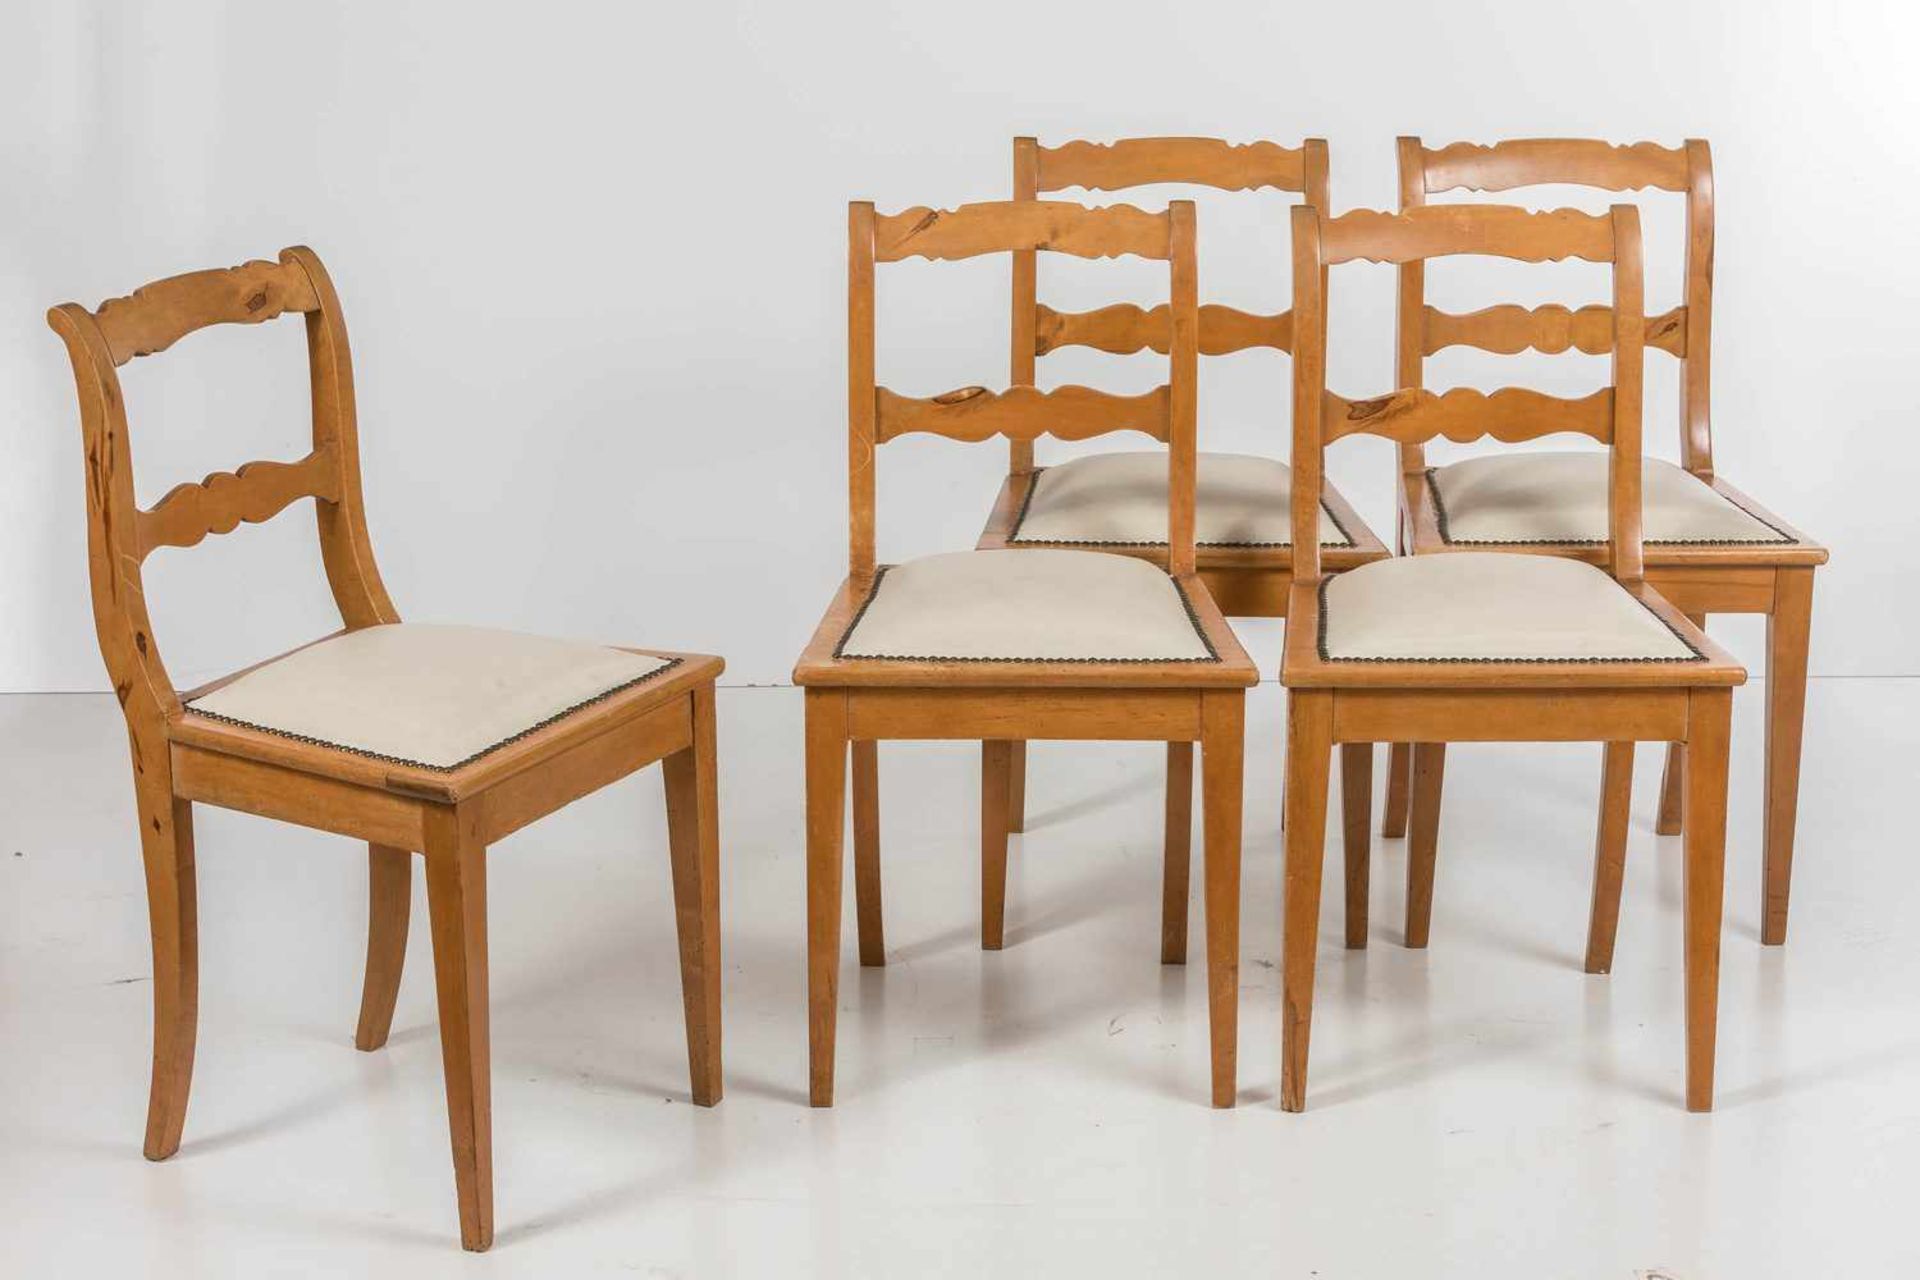 Fünf Stühle im BiedermeierstilObstholz. Trapezförmiger, breitrahmiger, gepolsterter Sitz mit